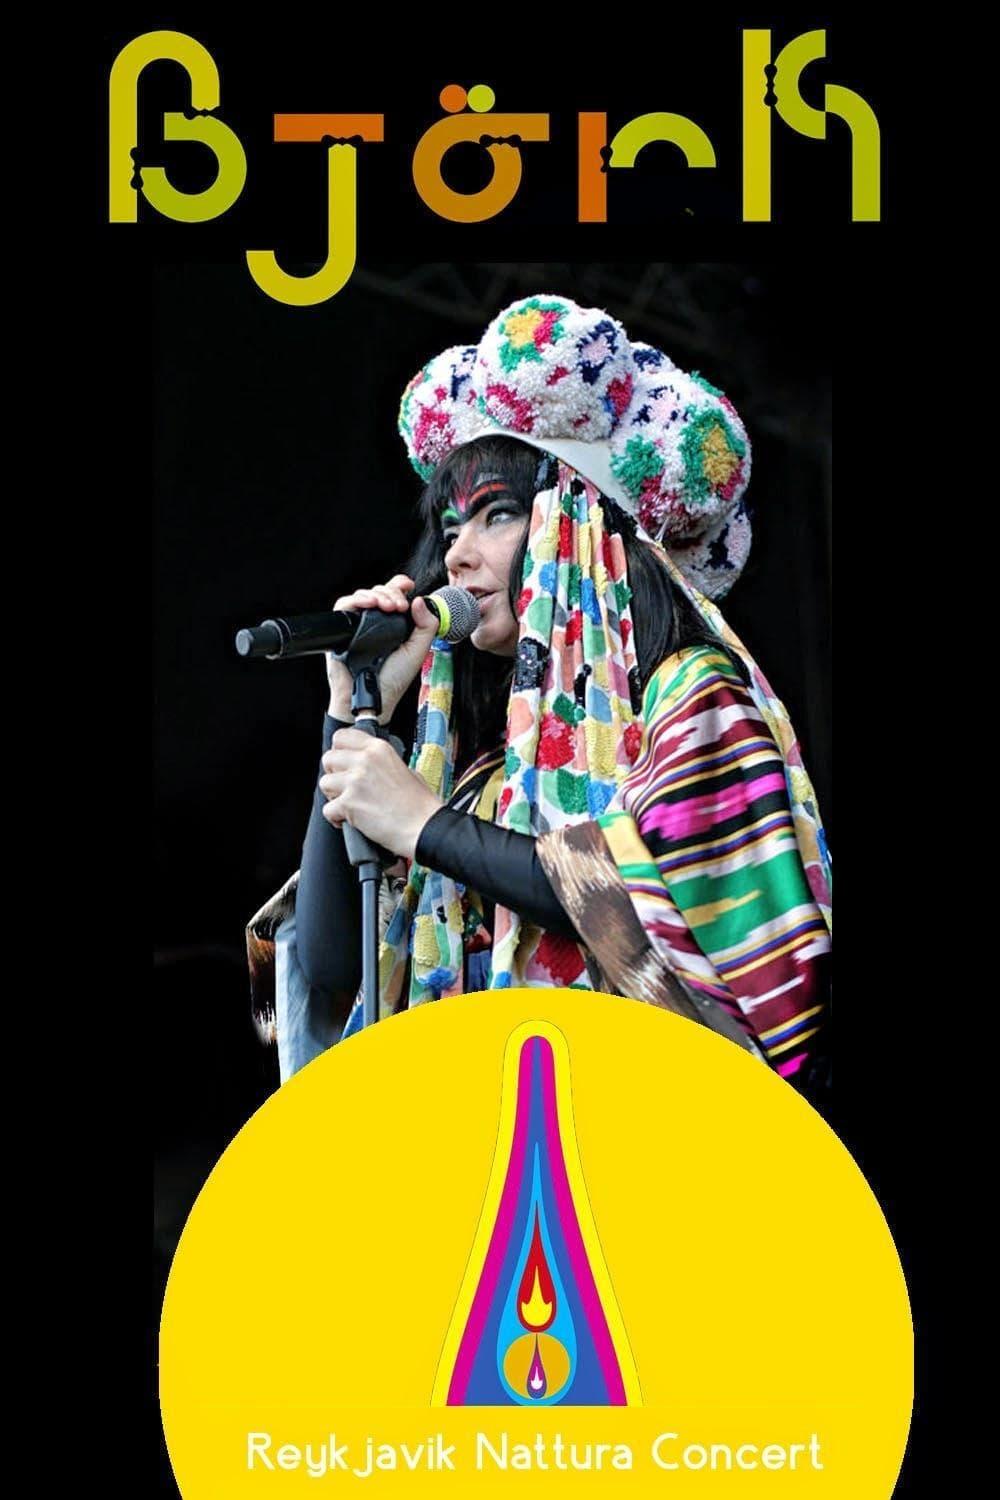 Náttúra Concert Featuring Björk and Sigur Rós poster